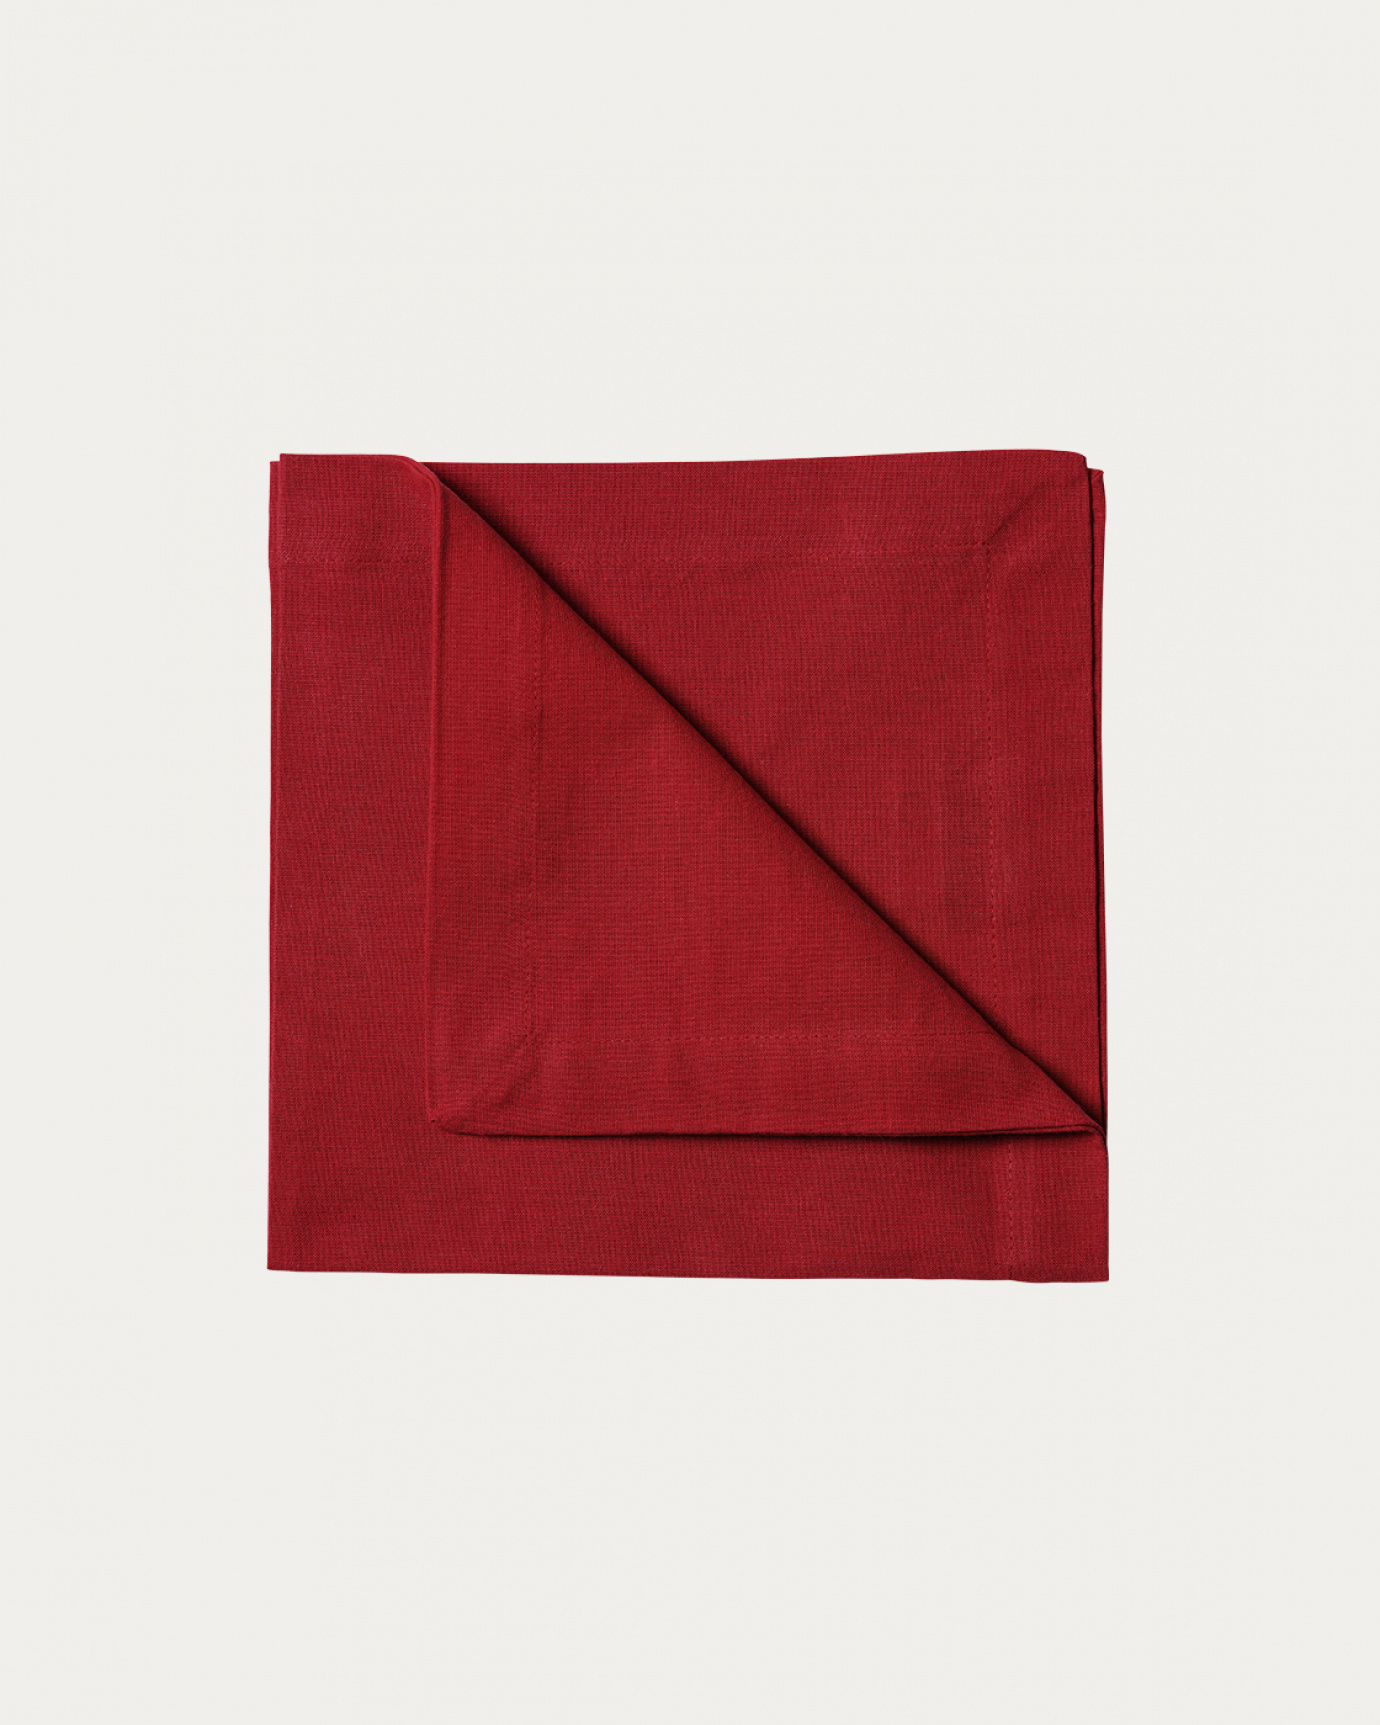 Produktbild röd ROBERT servett av mjuk bomull från LINUM DESIGN. Storlek 45x45 cm och säljs i 4 pack.